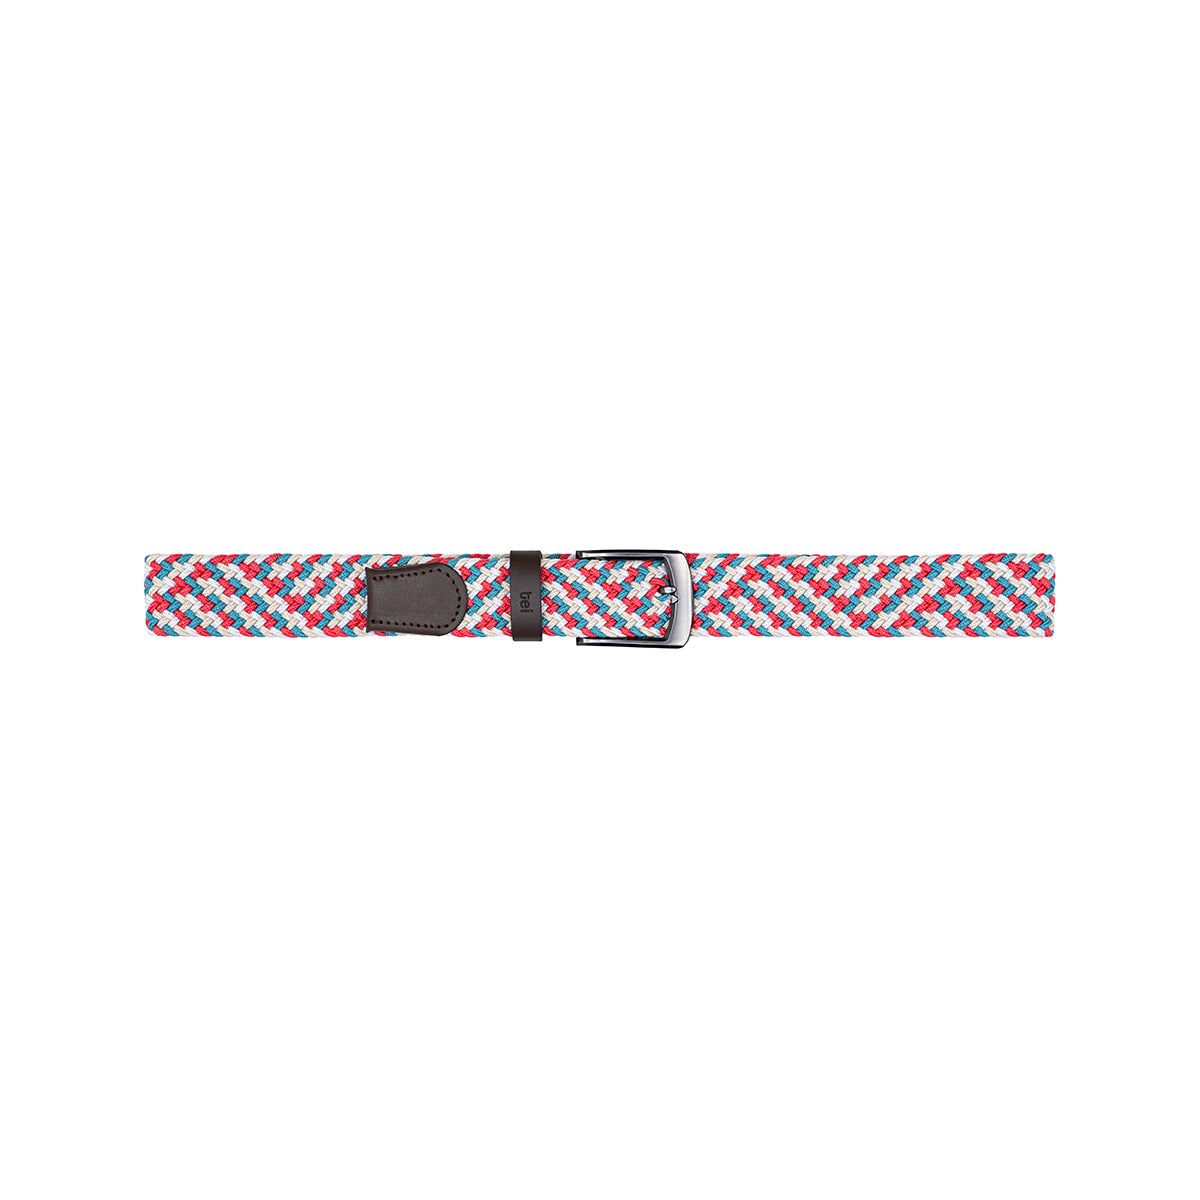 Cinturón trenzado elástico Rojo/ Agua Marina/ Beige/ Blanco